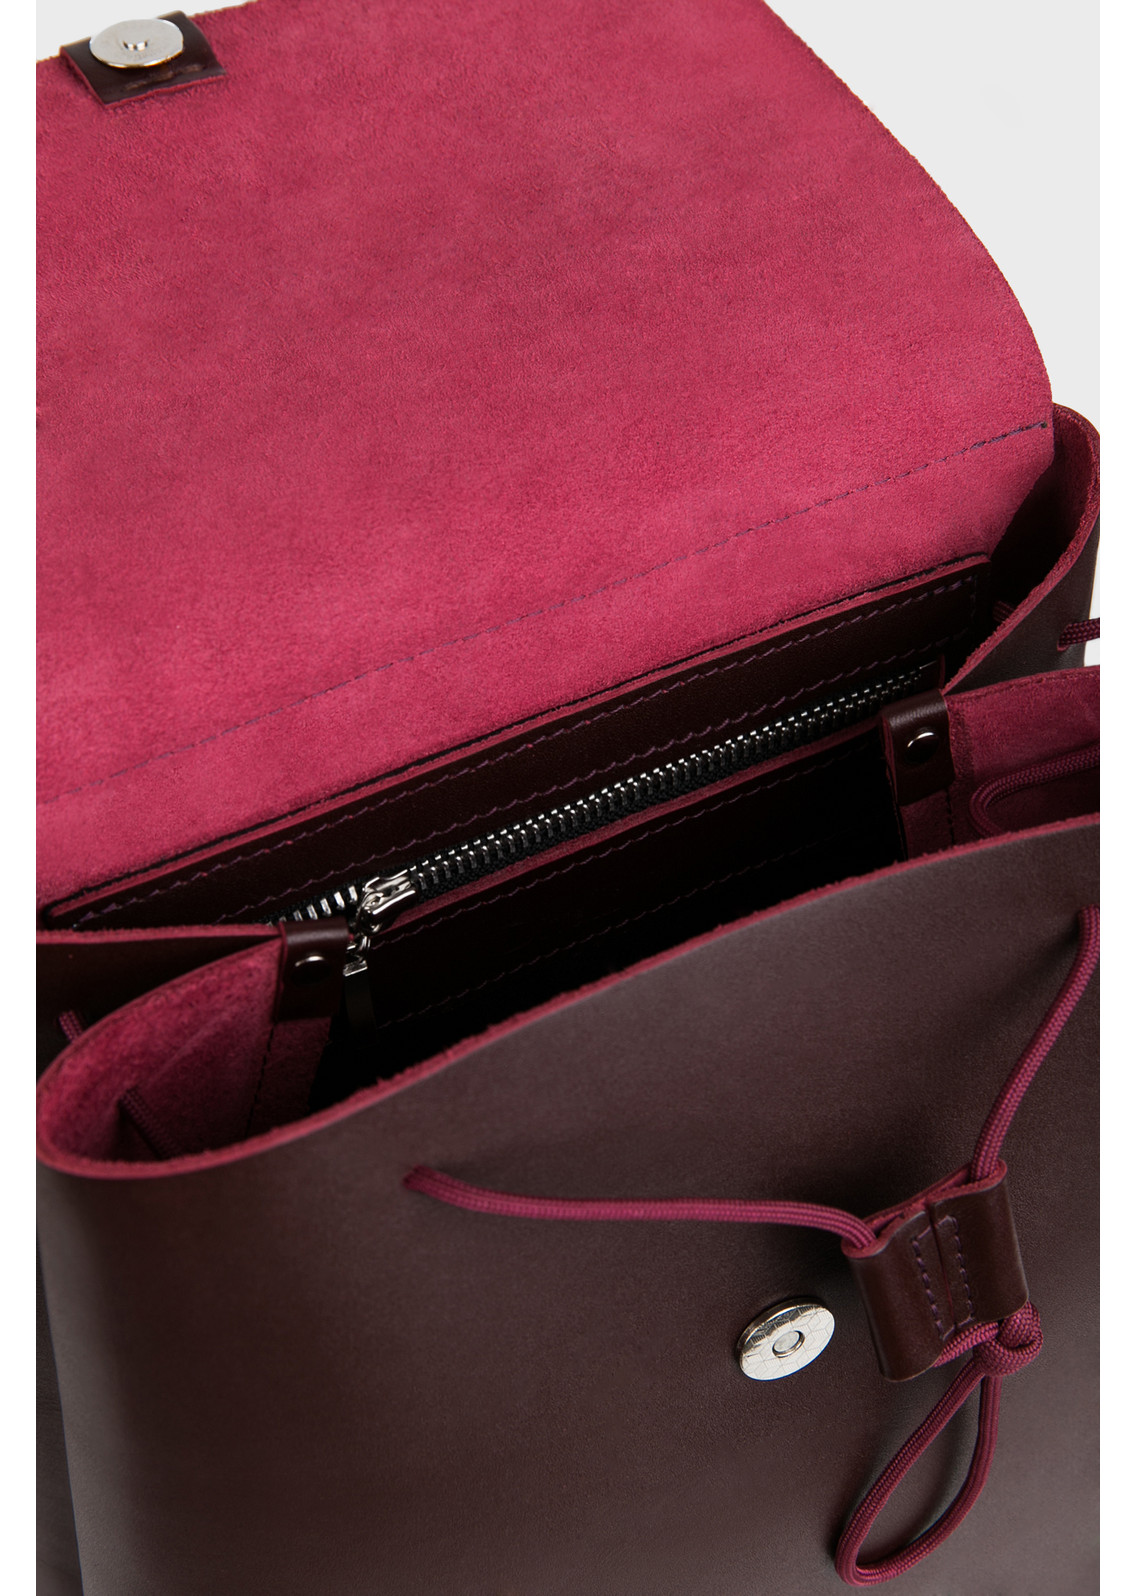 Женский рюкзак из натуральной кожи бордовый B003 burgundy